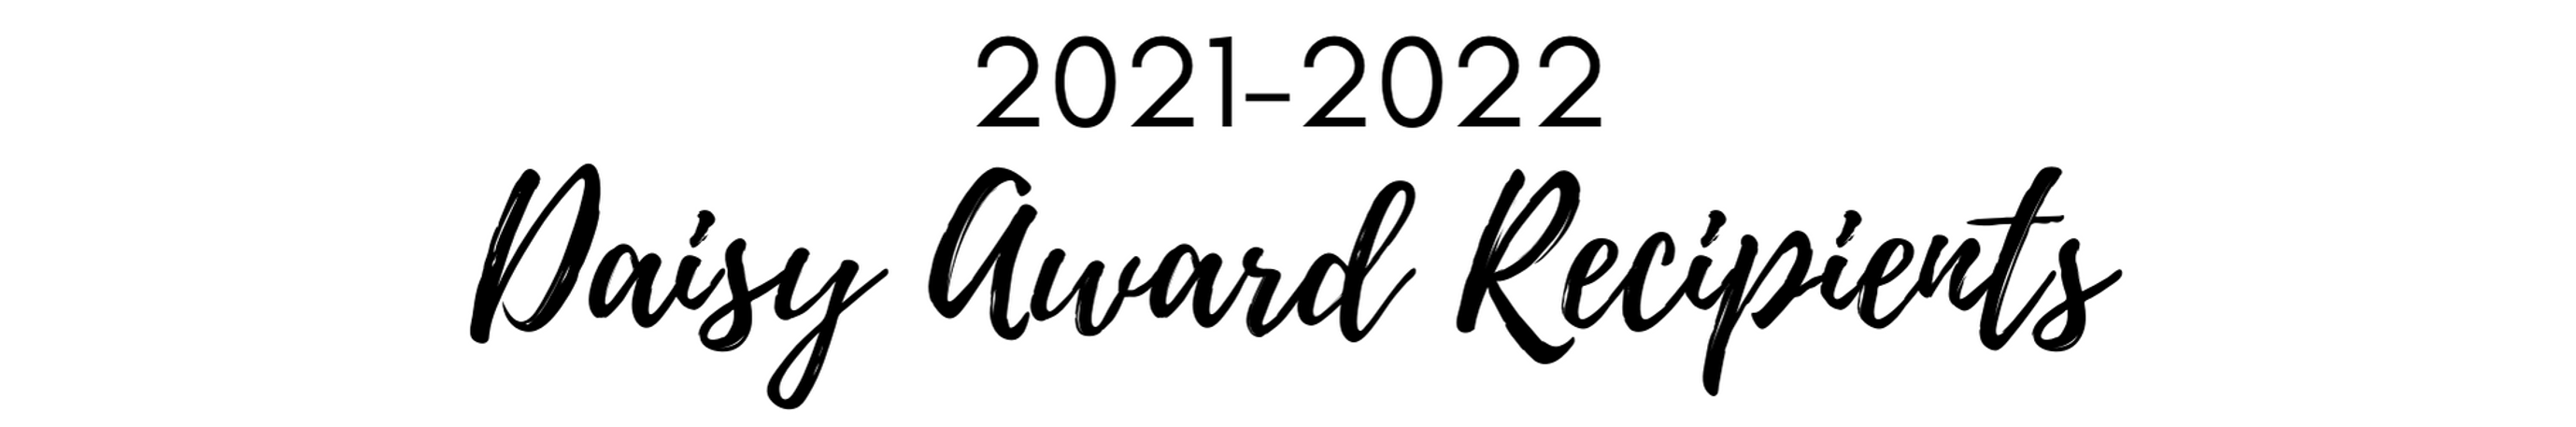 2021-2022 Daisy Award Recipients